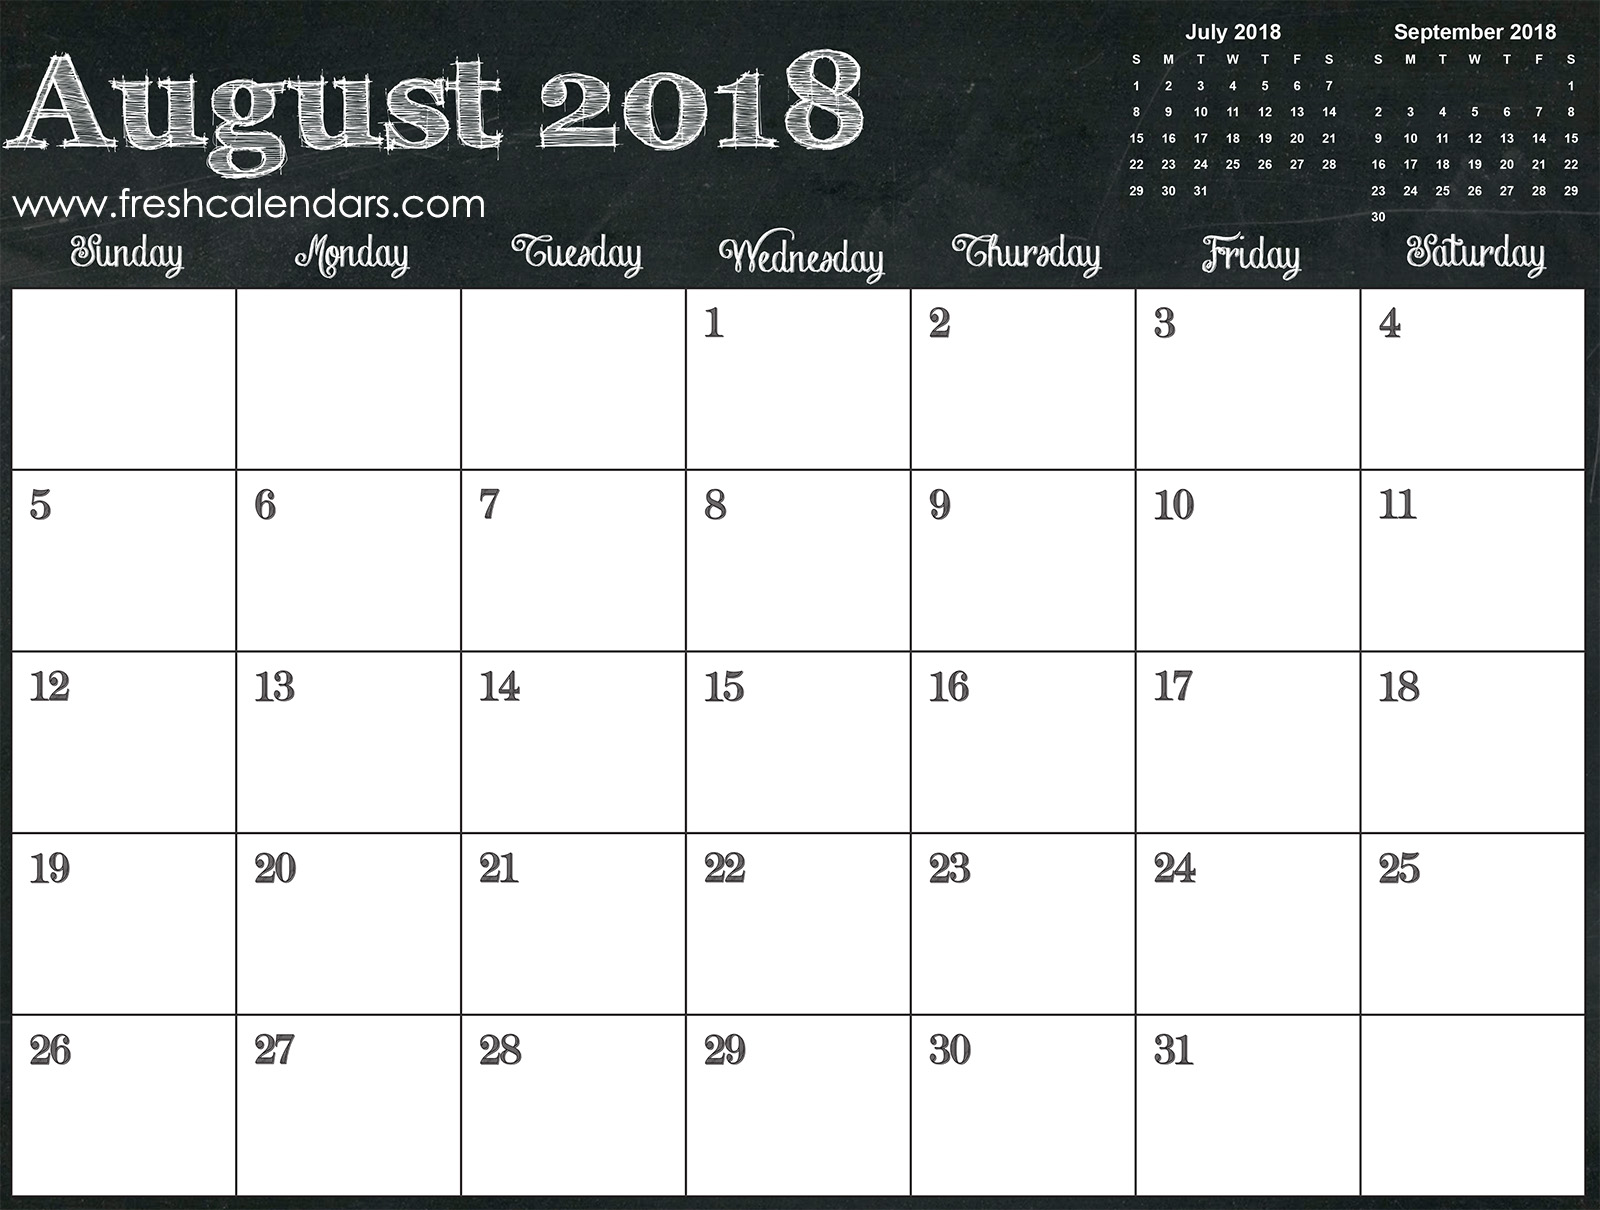 August 2018 Calendar Online Free Templates